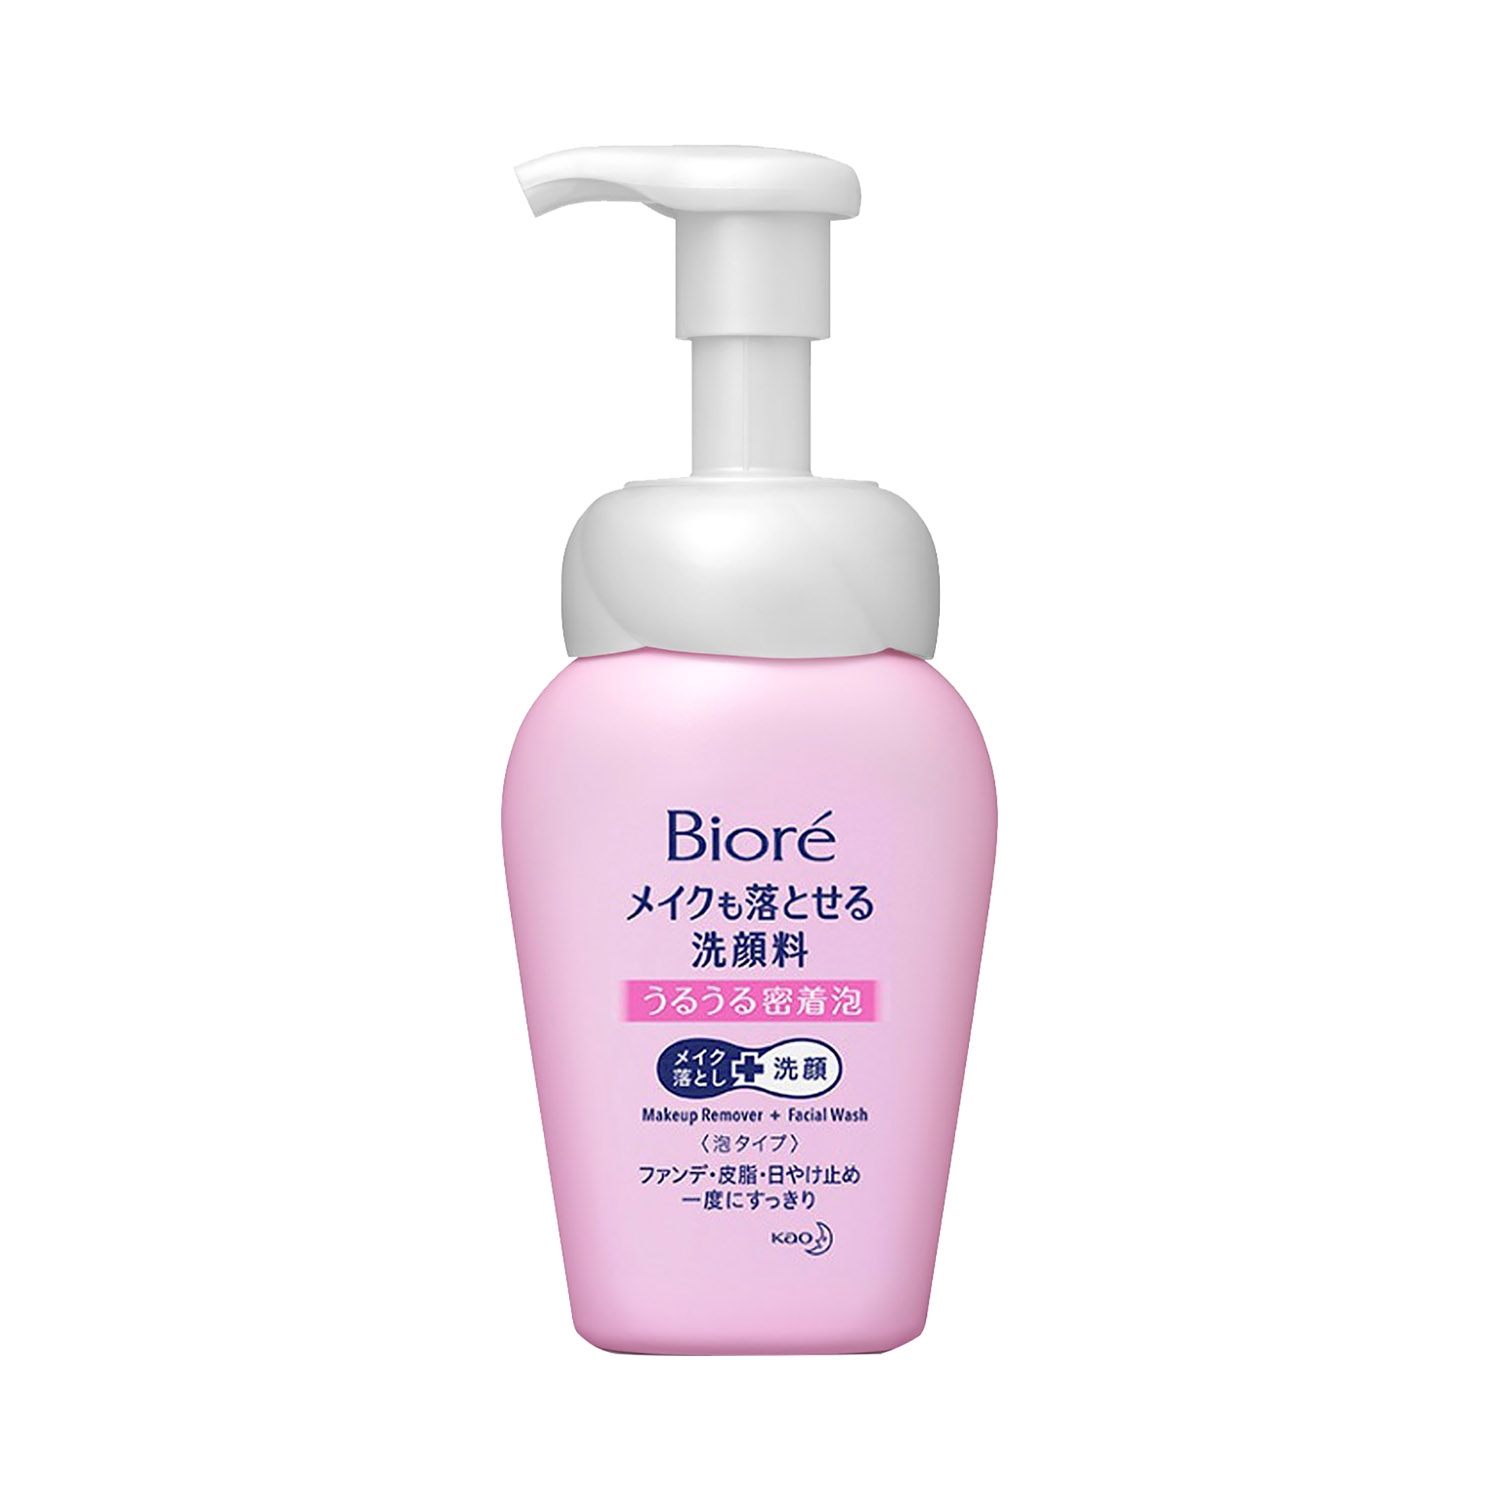 Biore | Biore Makeup Remover Cleansing Wash Foam (160ml)